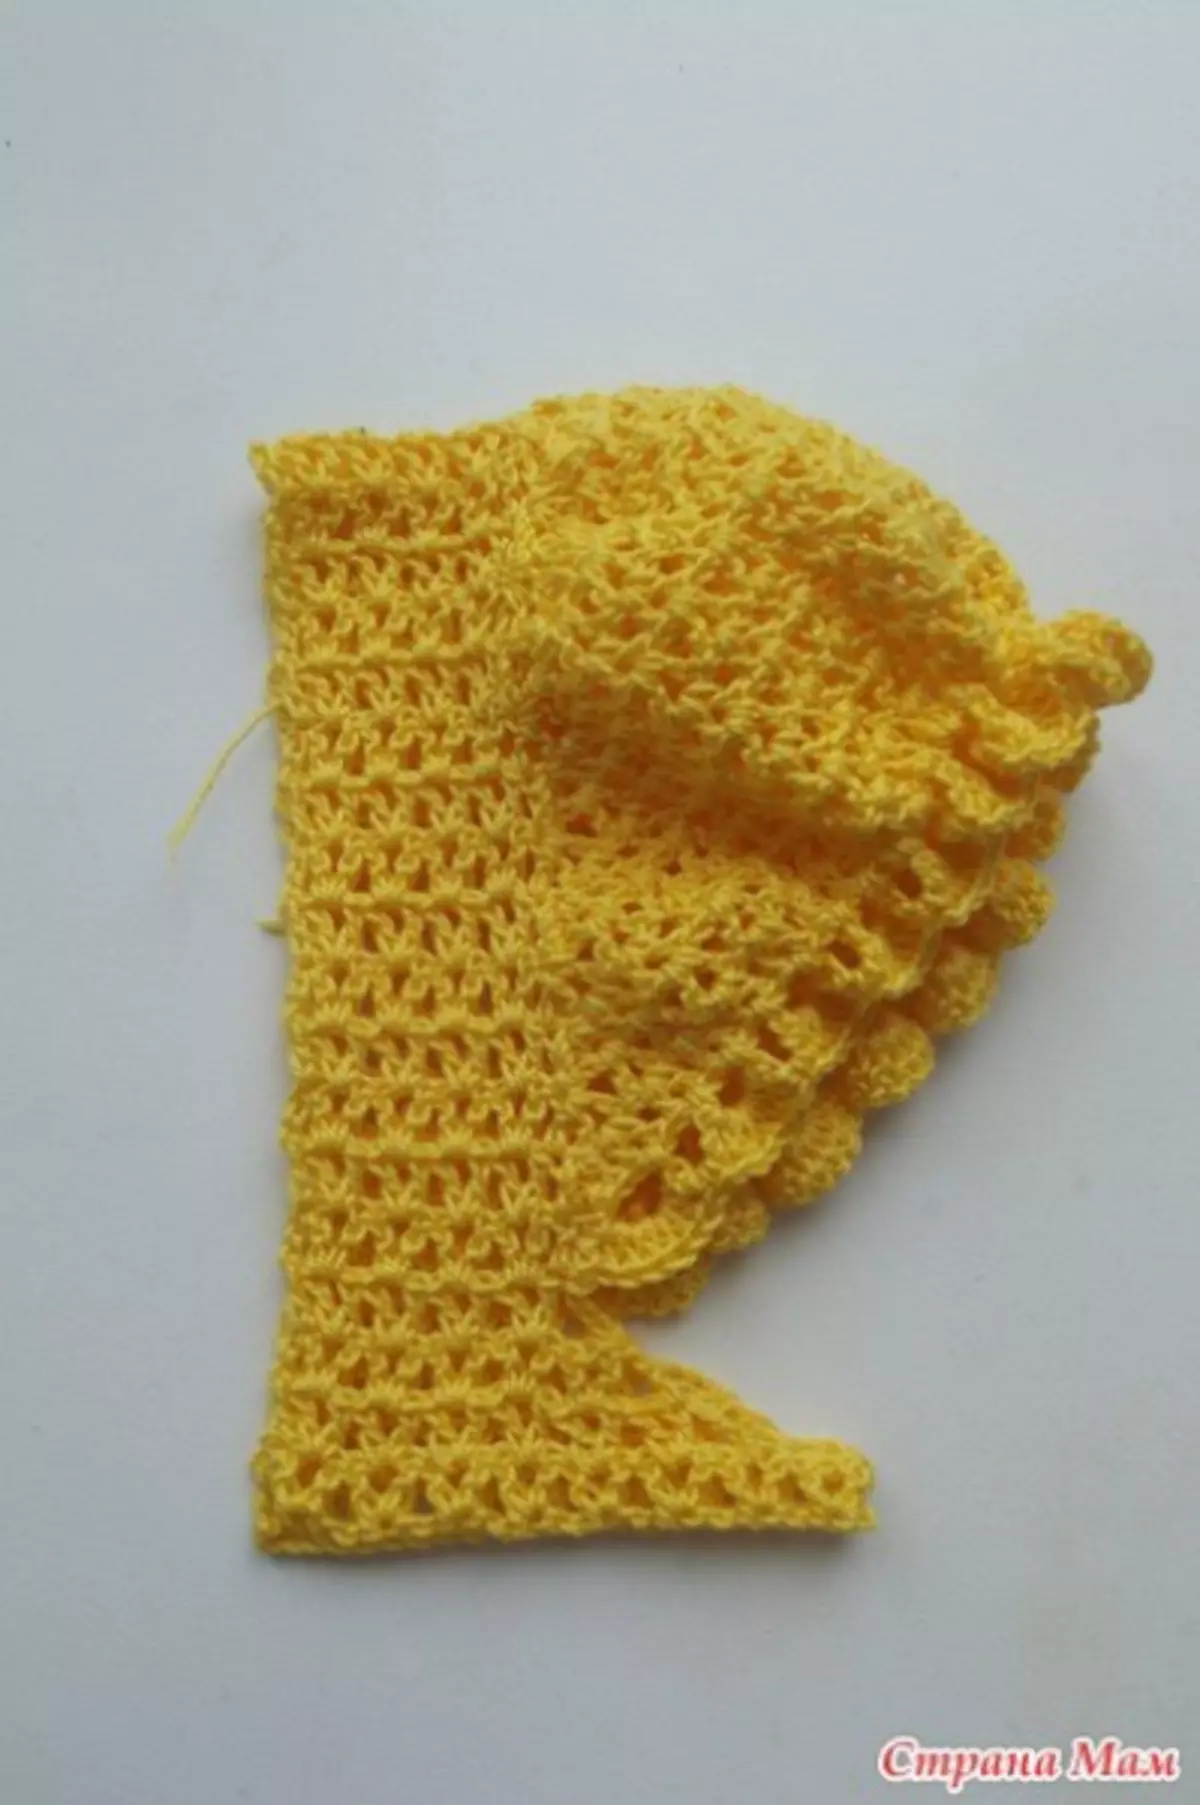 Տրիկոտաժե թեւ լապտեր Crochet - վարպետության դաս լուսանկարով